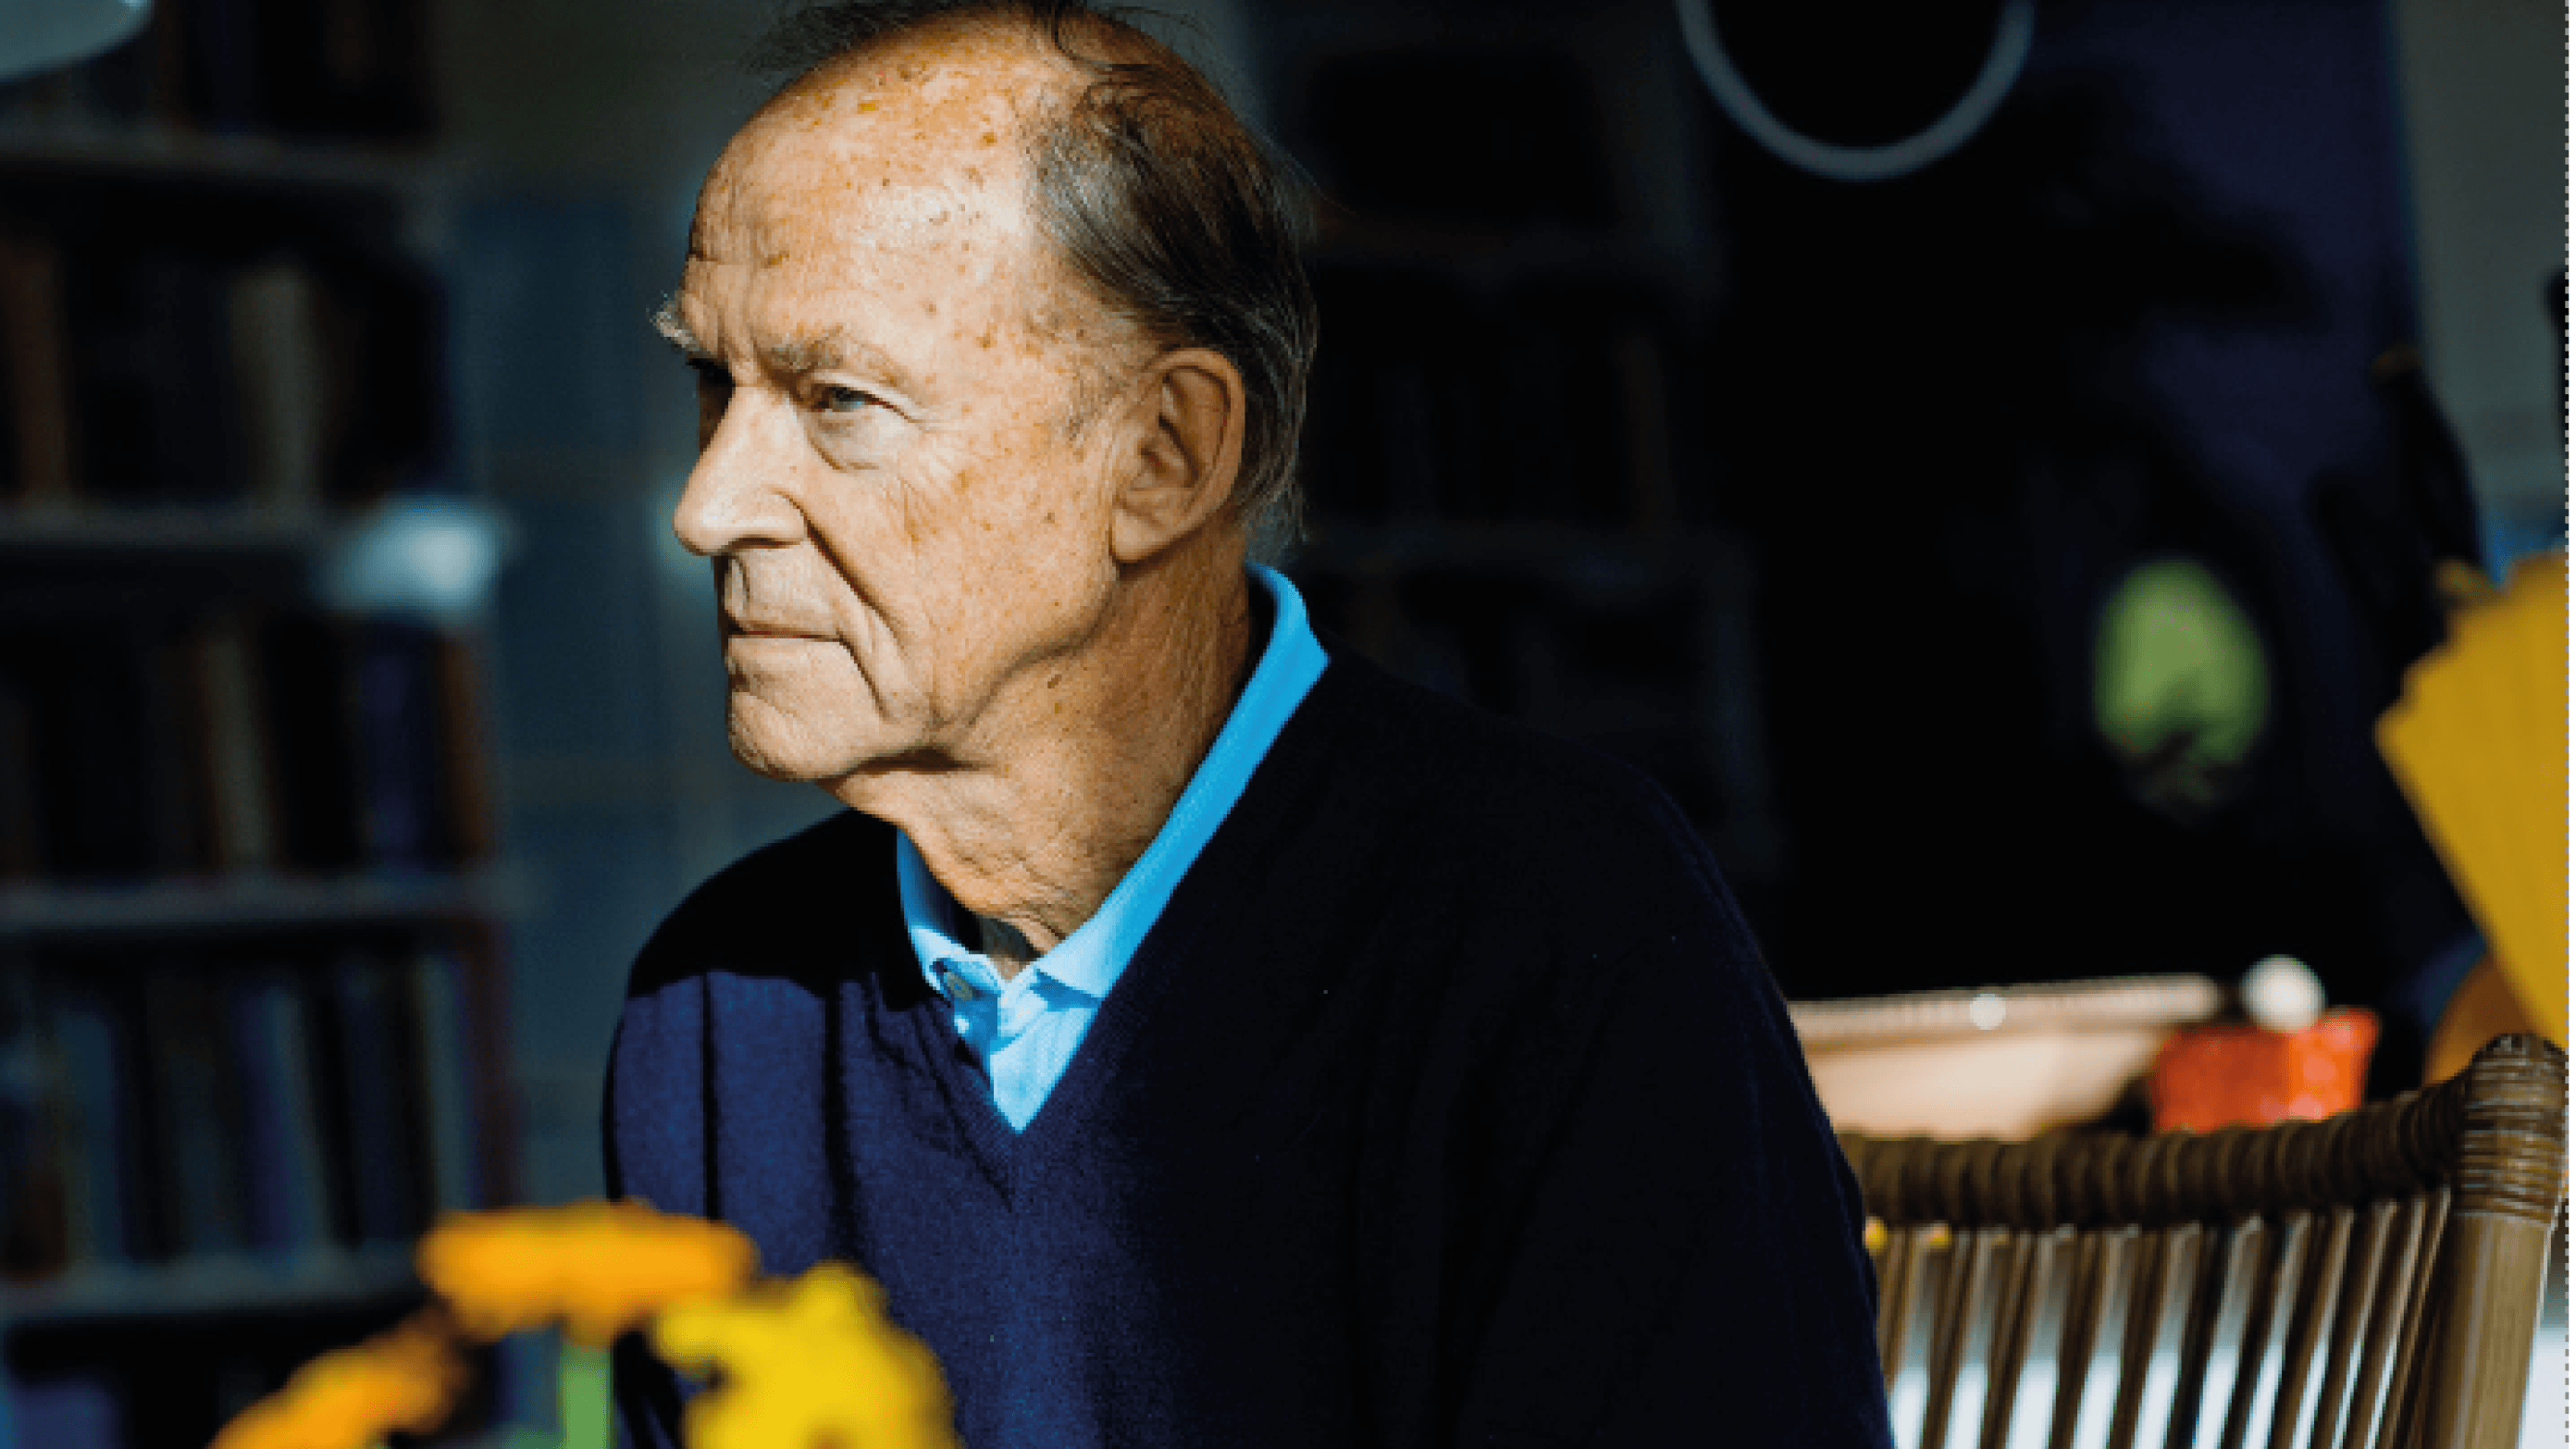 Jan-Helge Larsen er årets modtager af Mahlerprisen. Han bor i sit selvbyggede og selvforsynende hus i Dronningmølle, men har bygget meget andet – blandt andet de metoder til at styrke konsultationsprocessen, som han hædres for på Lægedage. (Foto: Claus Boesen)